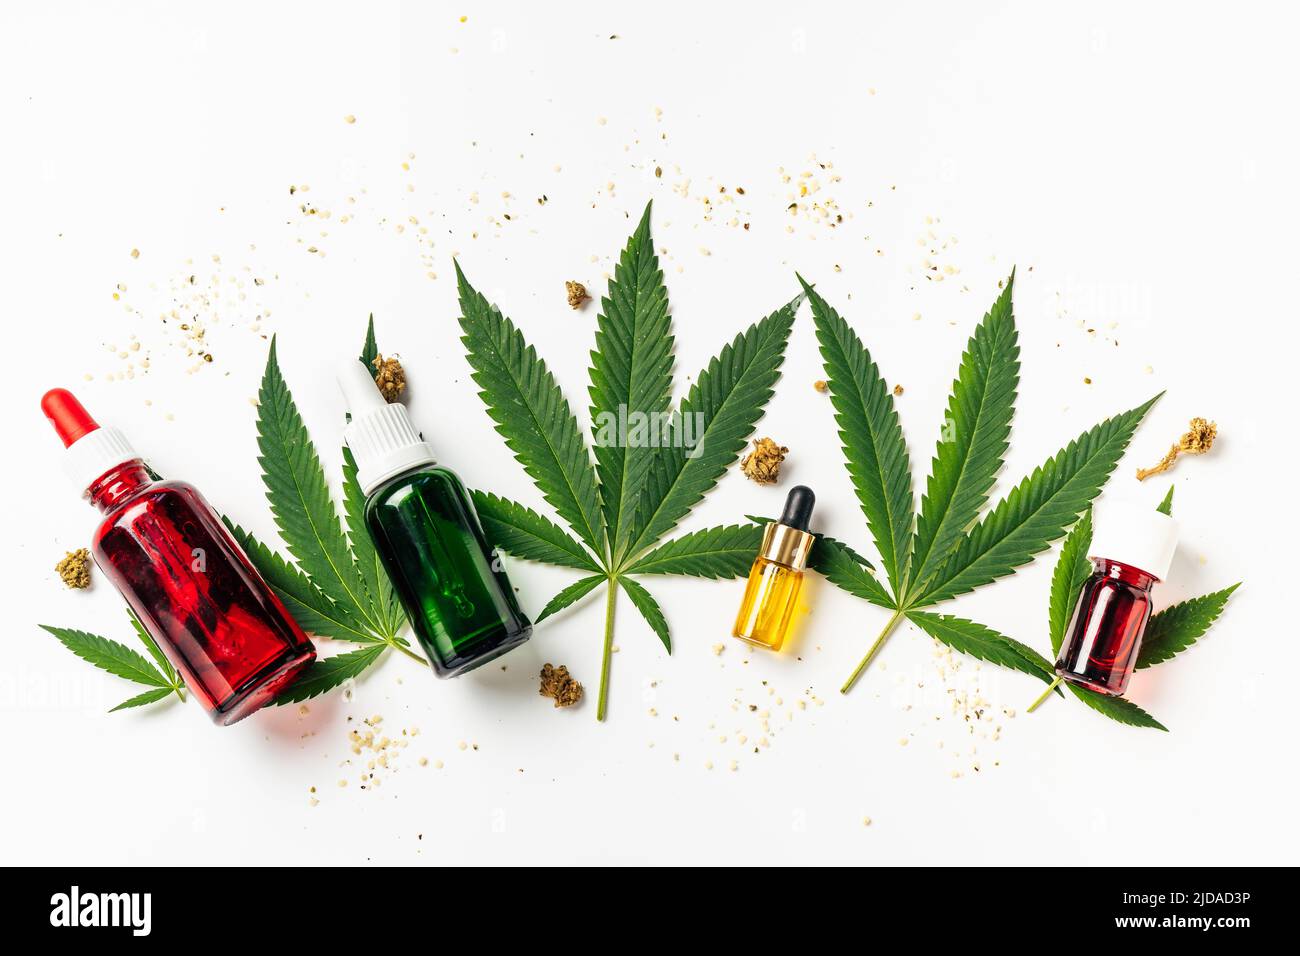 Cannabisöl, Hanfblätter, trockene Blumen und Samen auf weißem Hintergrund. Naturkosmetik. Zunehmend legale und medizinische Verwendung von Marihuana Stockfoto